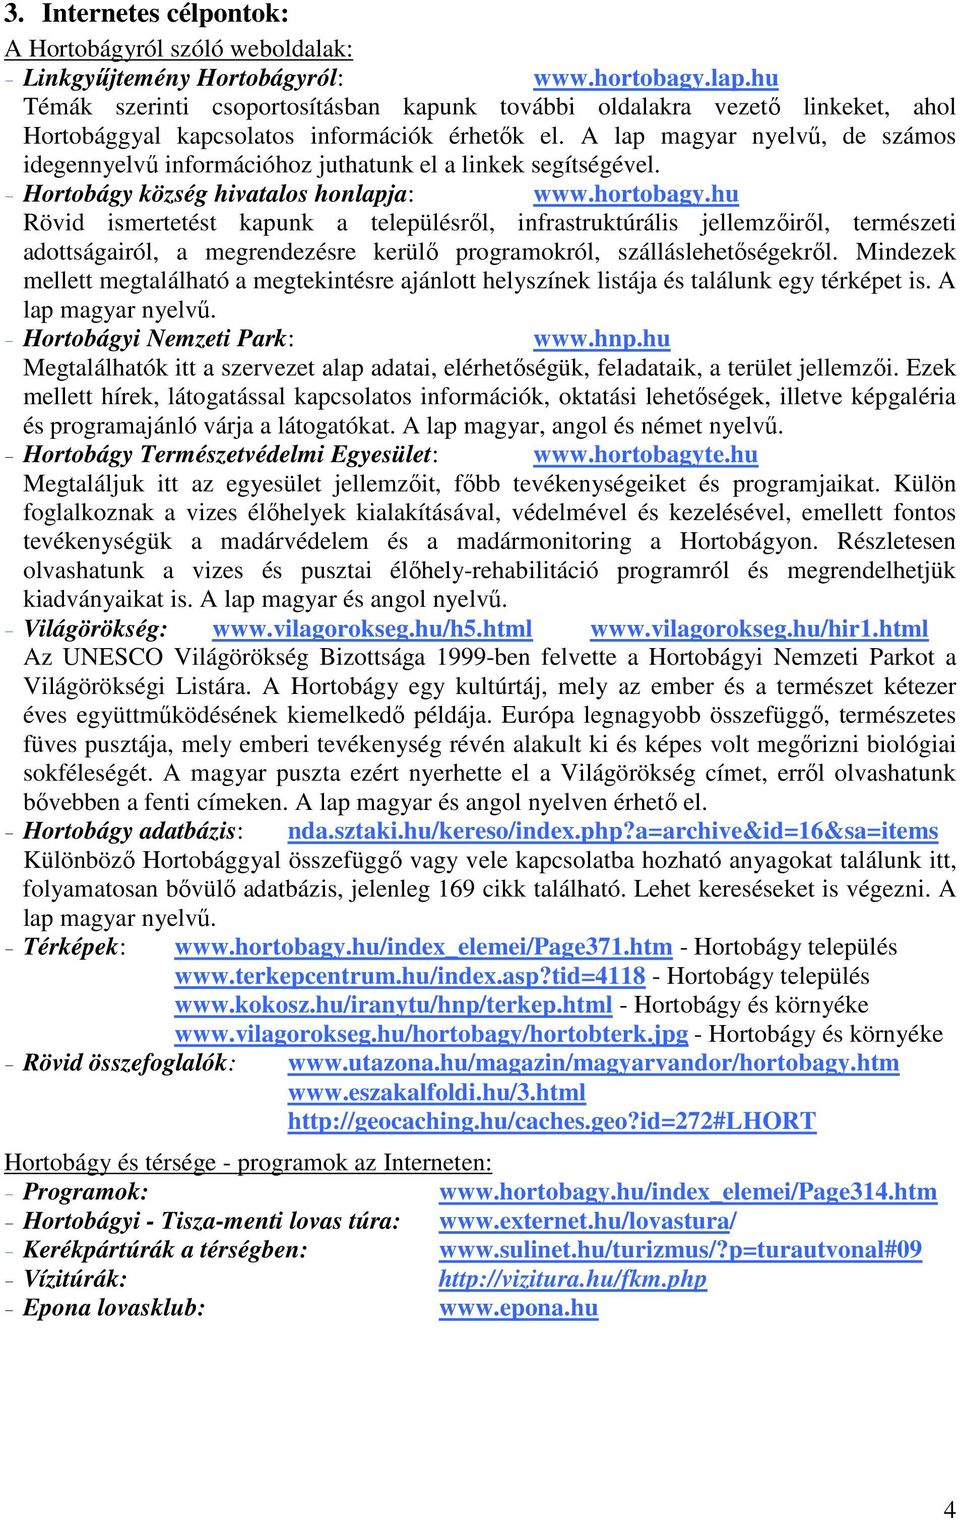 A lap magyar nyelvő, de számos idegennyelvő információhoz juthatunk el a linkek segítségével. - Hortobágy község hivatalos honlapja: www.hortobagy.